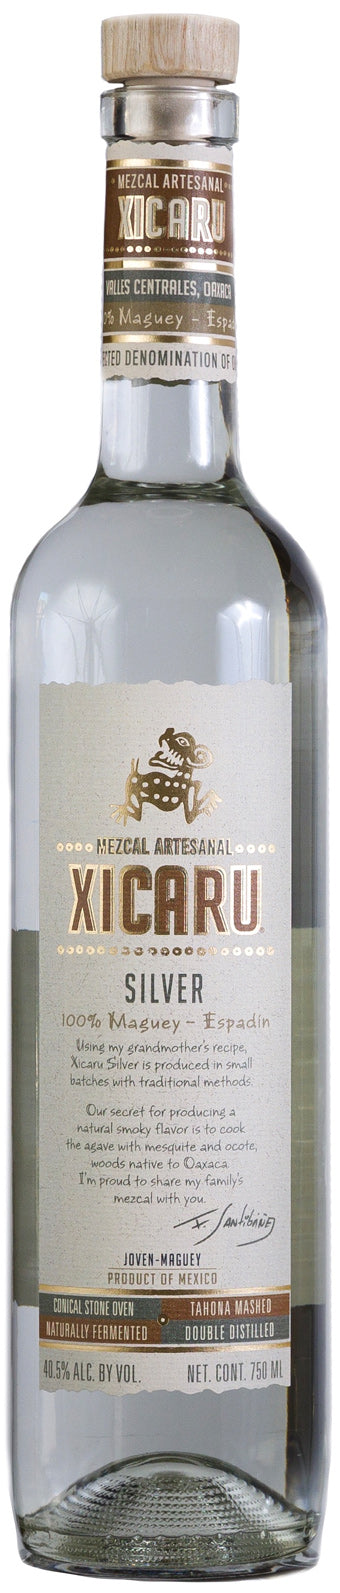 XICARU SILVER MEZCAL Mezcal BeverageWarehouse